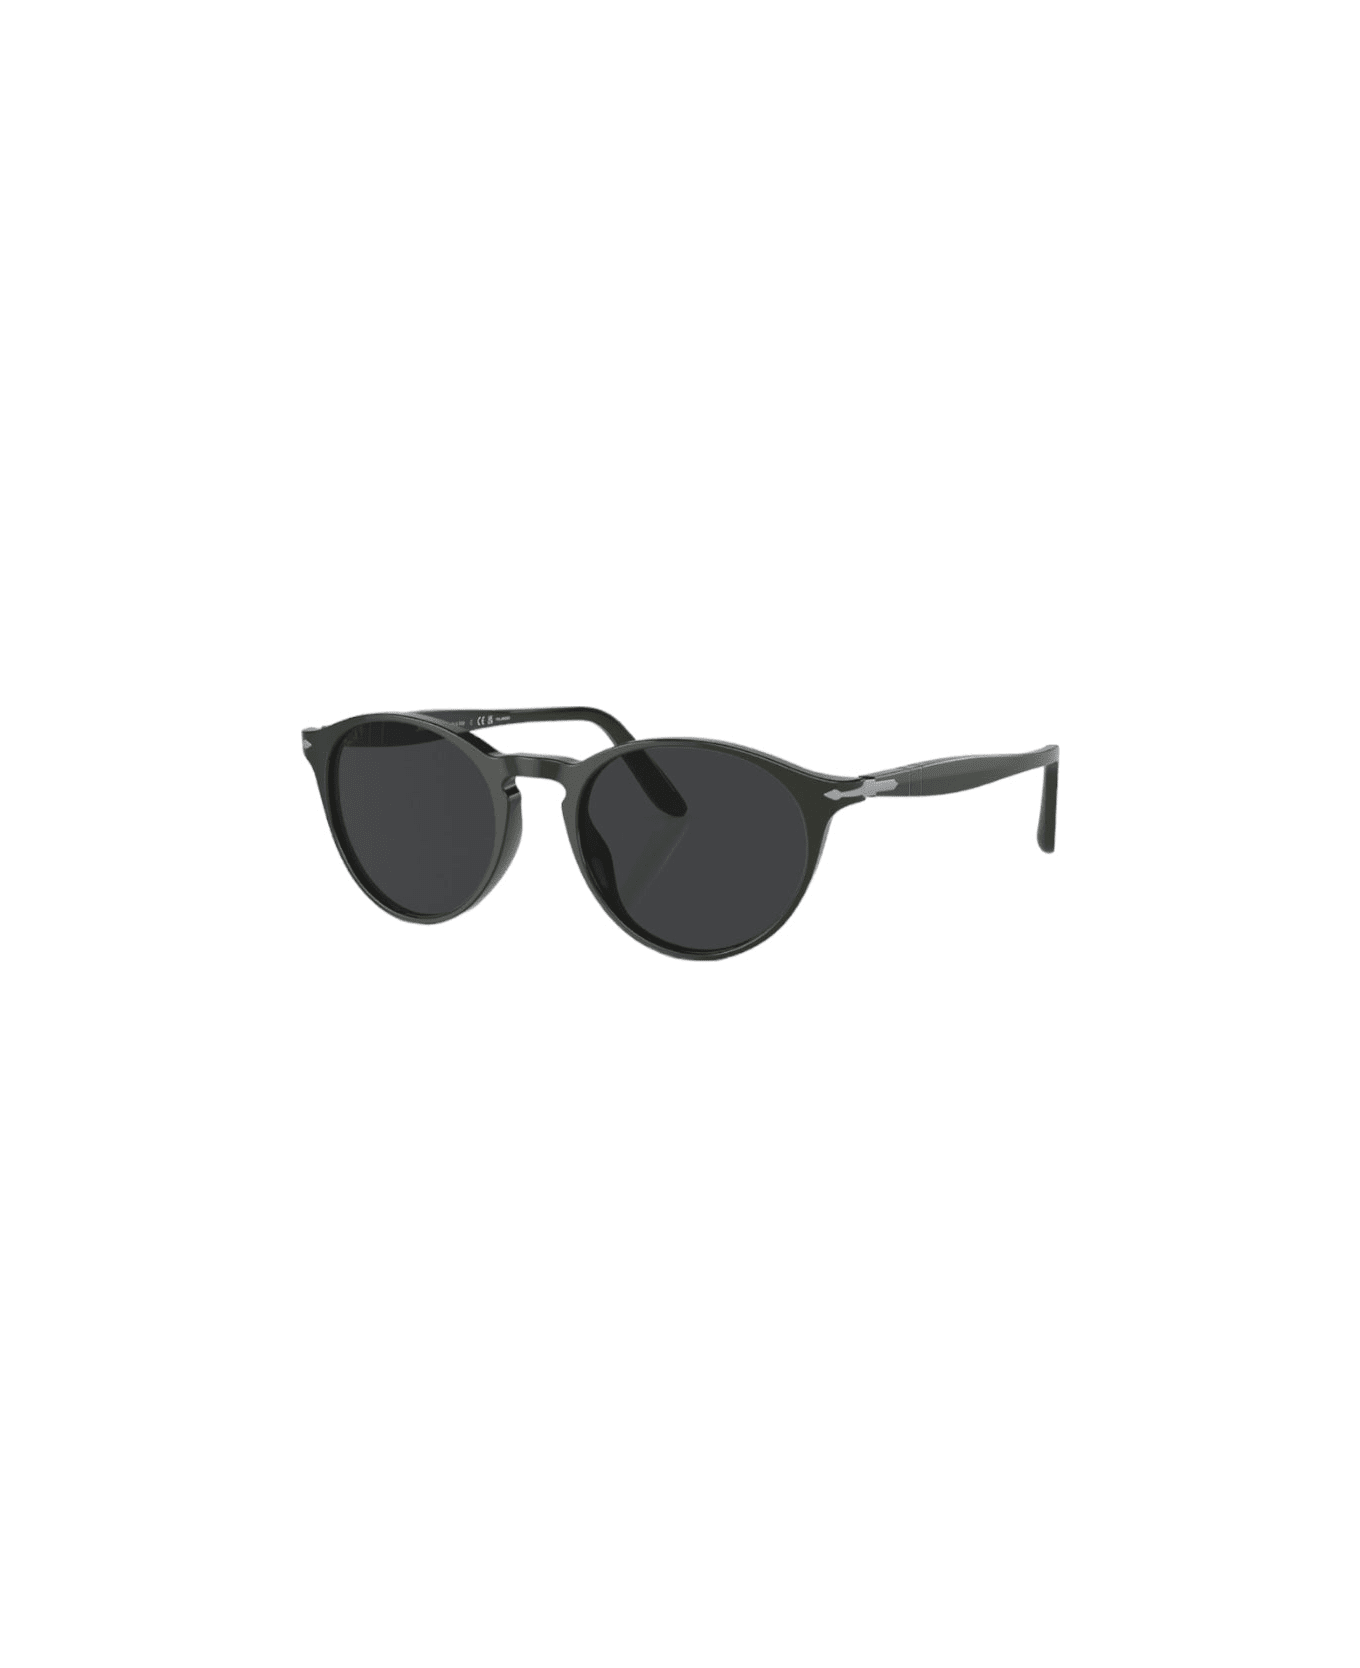 Persol 3092-s-m - Green Sunglasses